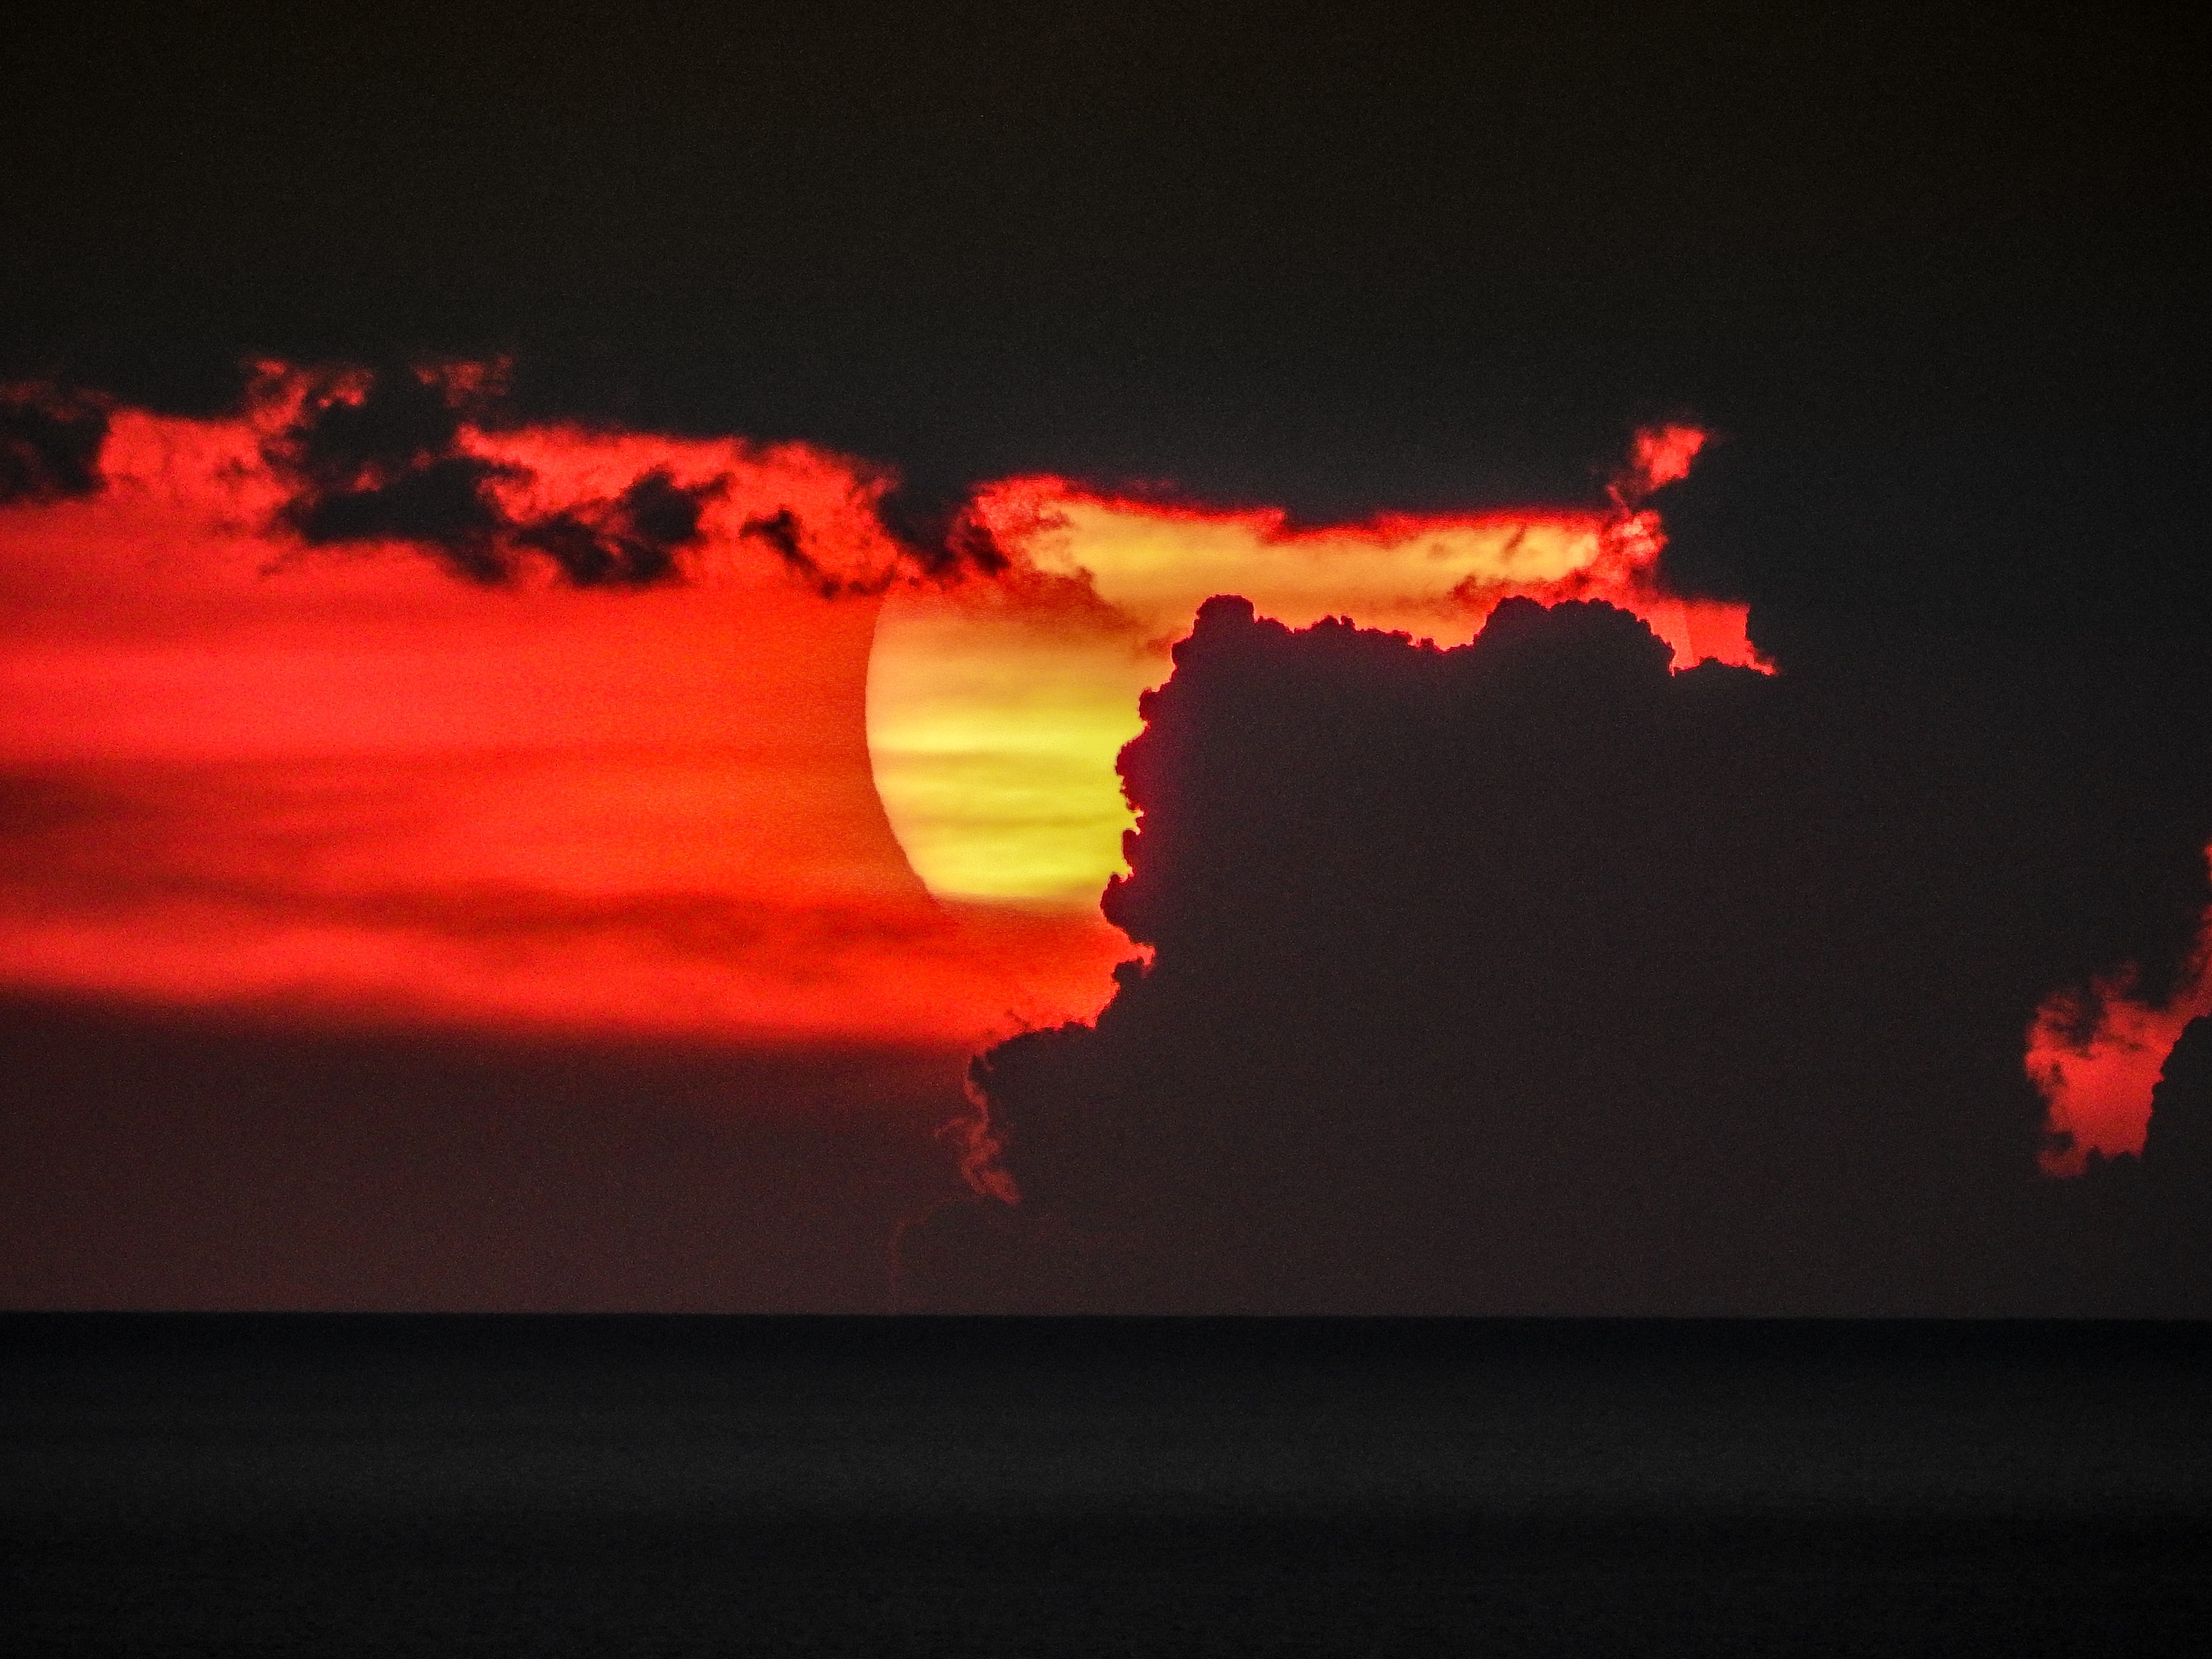 Sunset behind a cloud